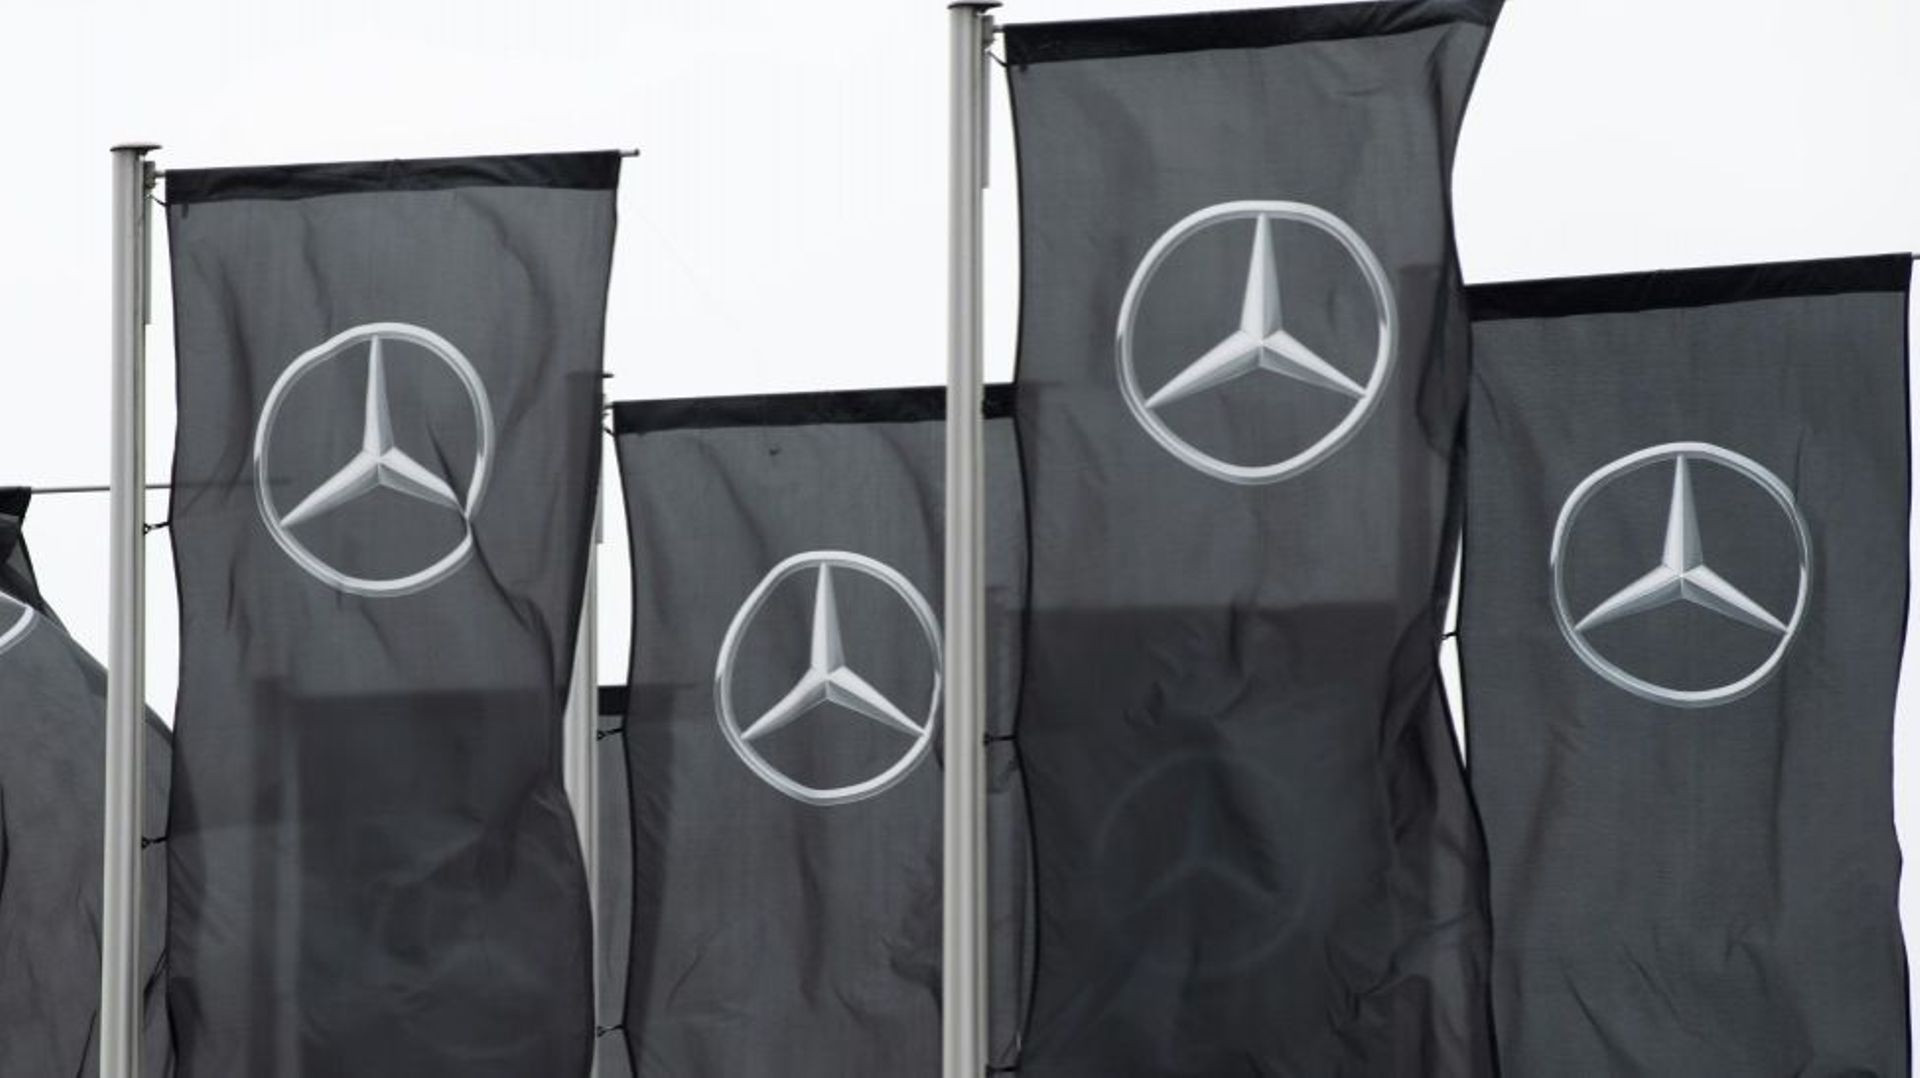 Le constructeur automobile allemand Mercedes-Benz rappelle près d'un million de véhicules en raison d'un potentiel problème dans le système de freins